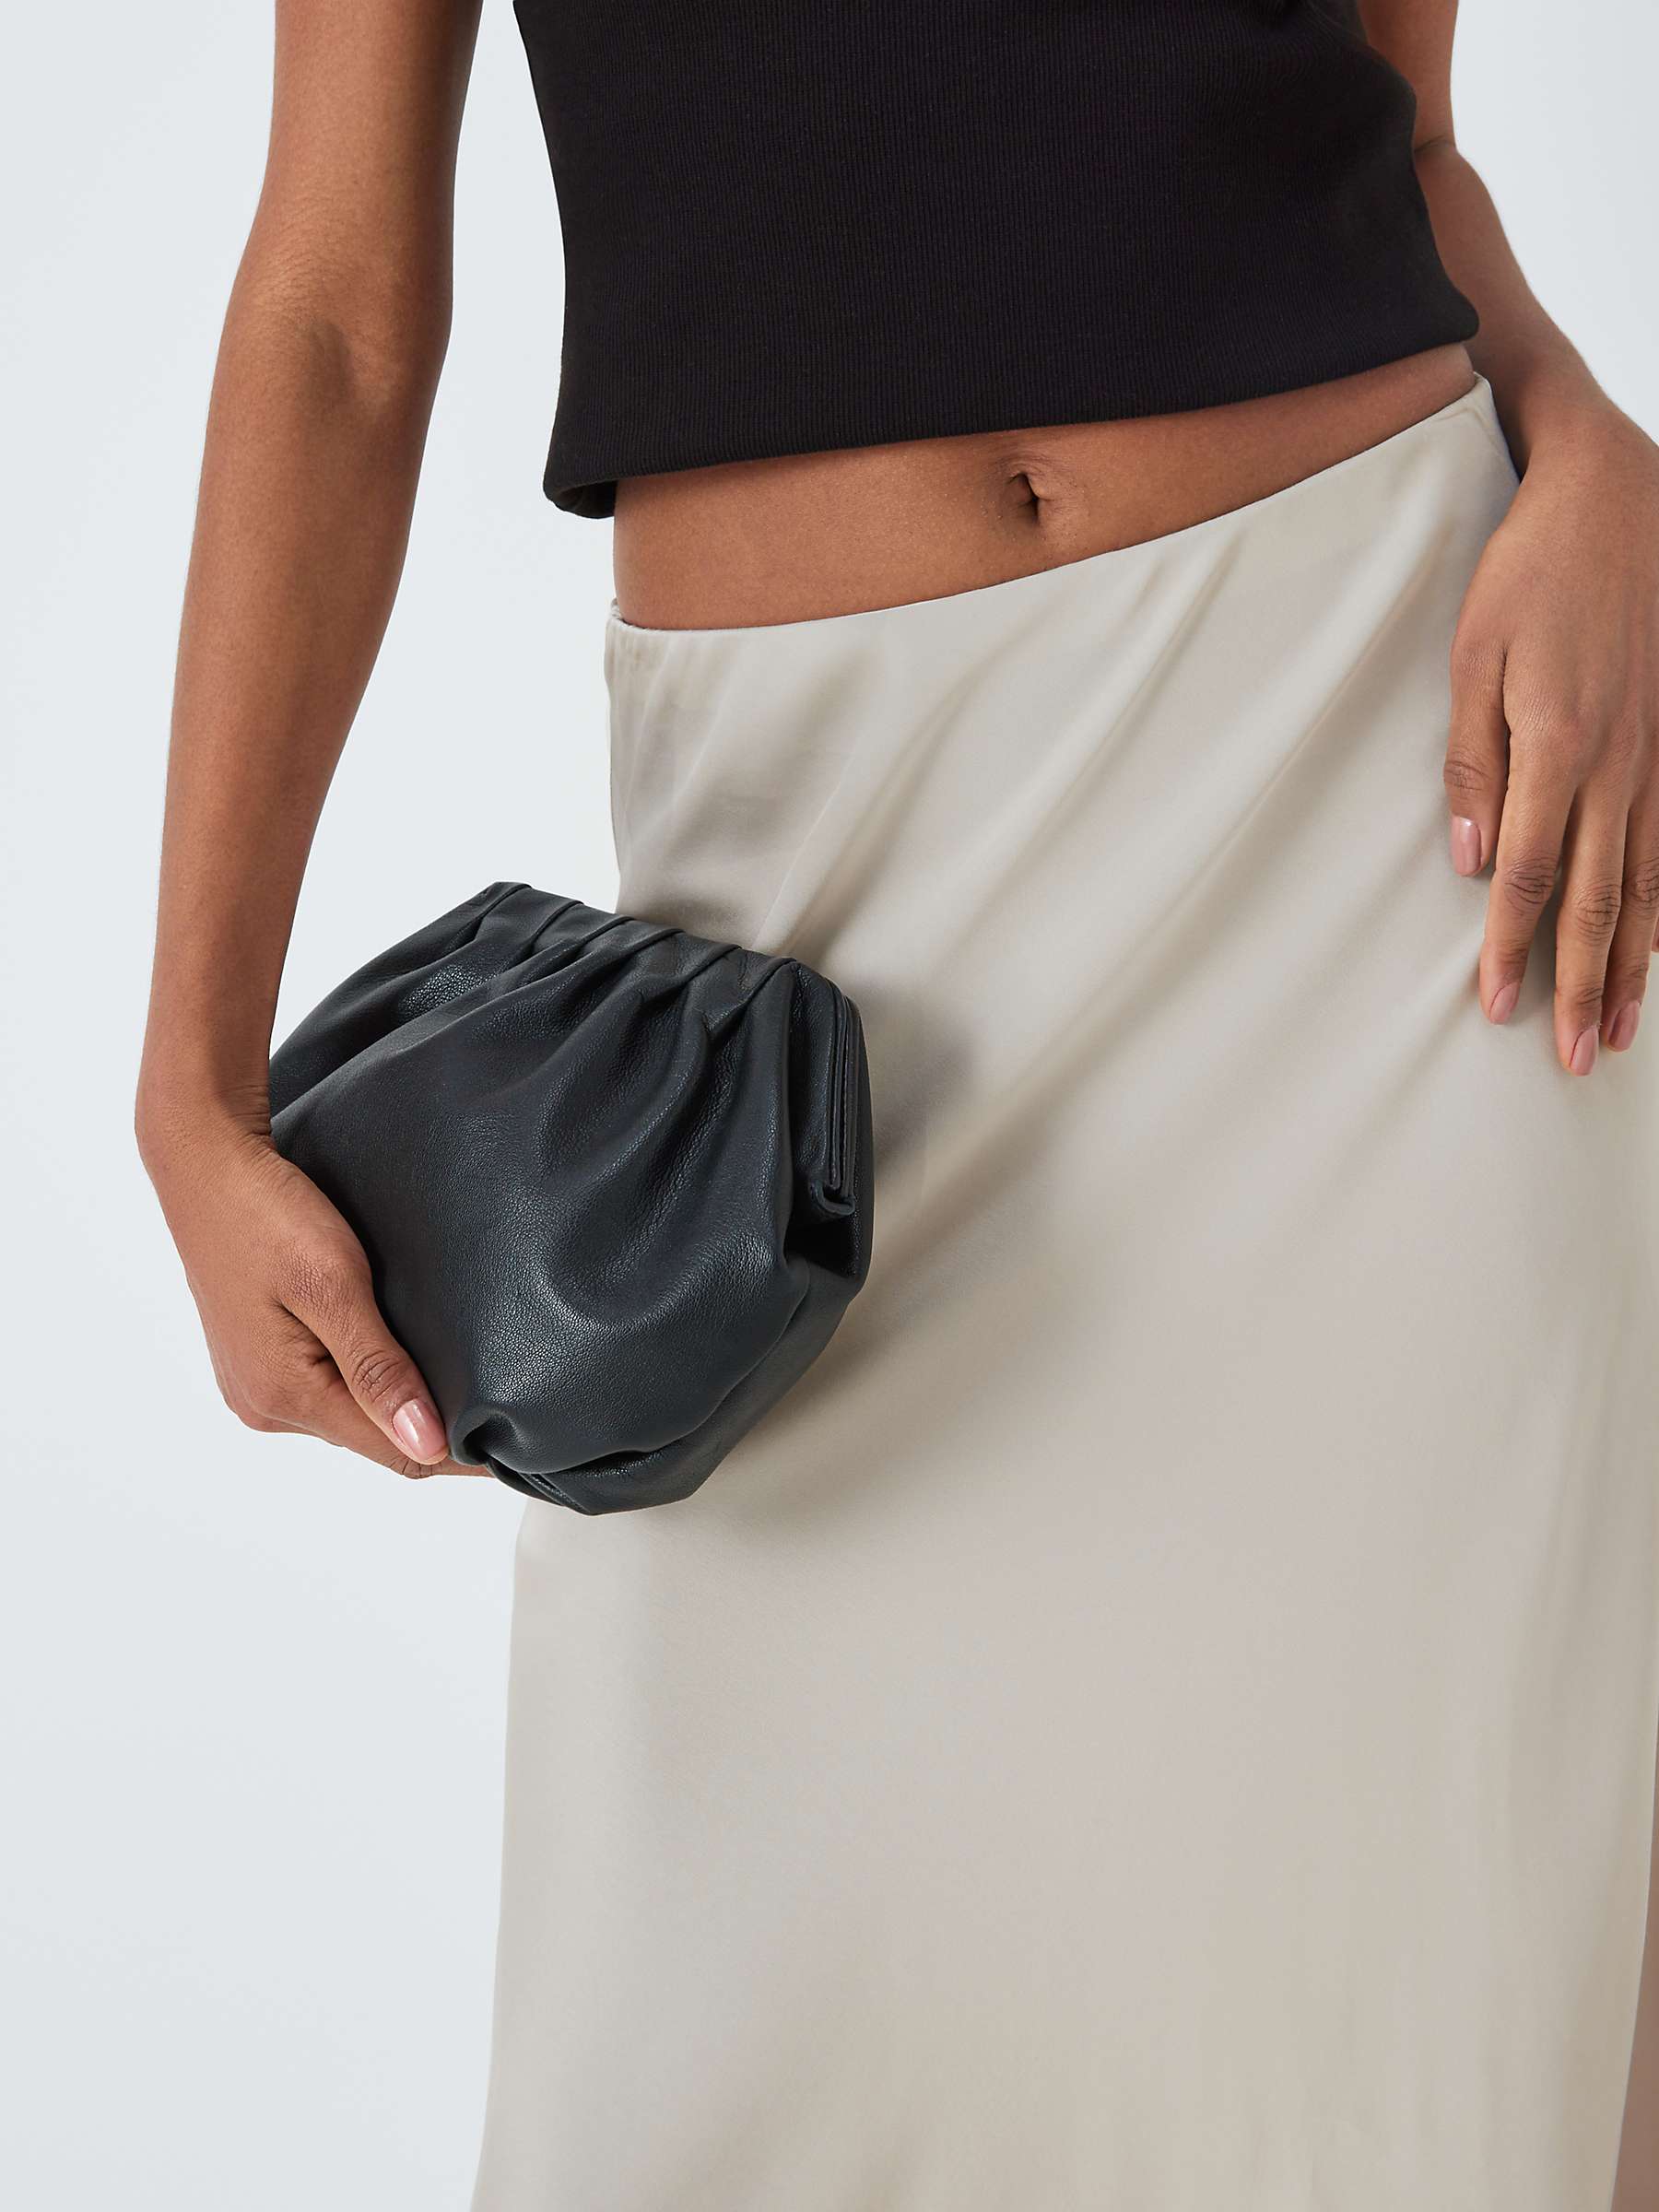 Buy Vivere By Savannah Miller Eden Satin Asymmetric Hem Midi Skirt Online at johnlewis.com